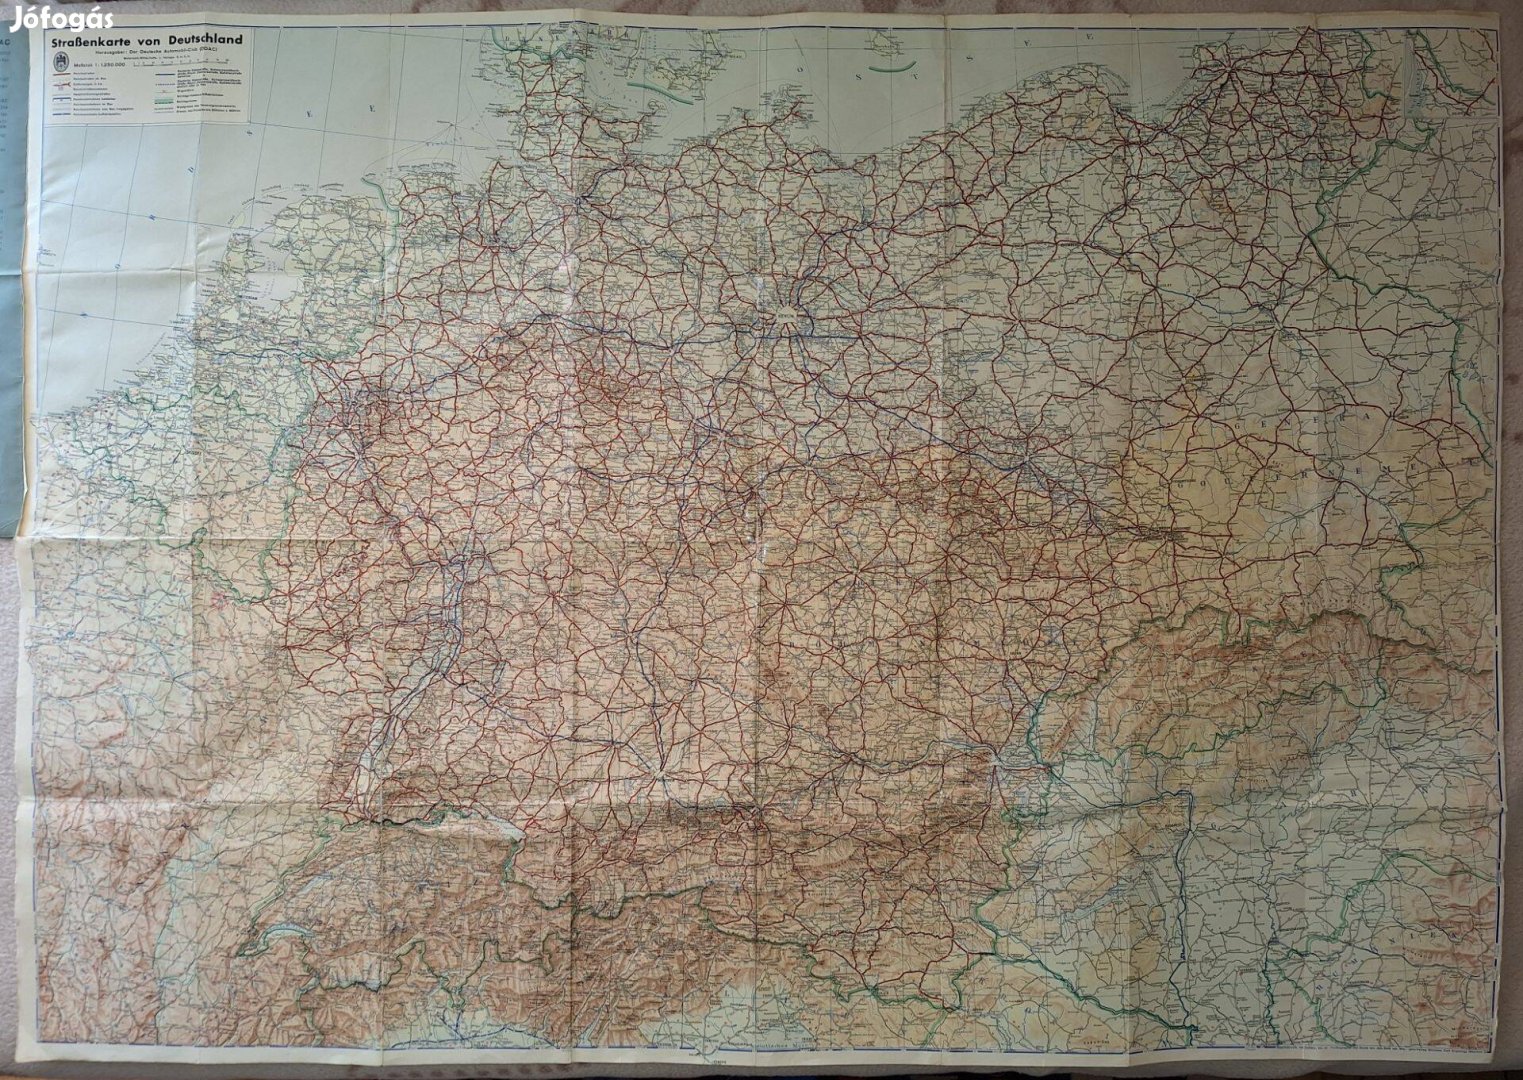 Németország, Harmadik Birodalom térképe, 1941